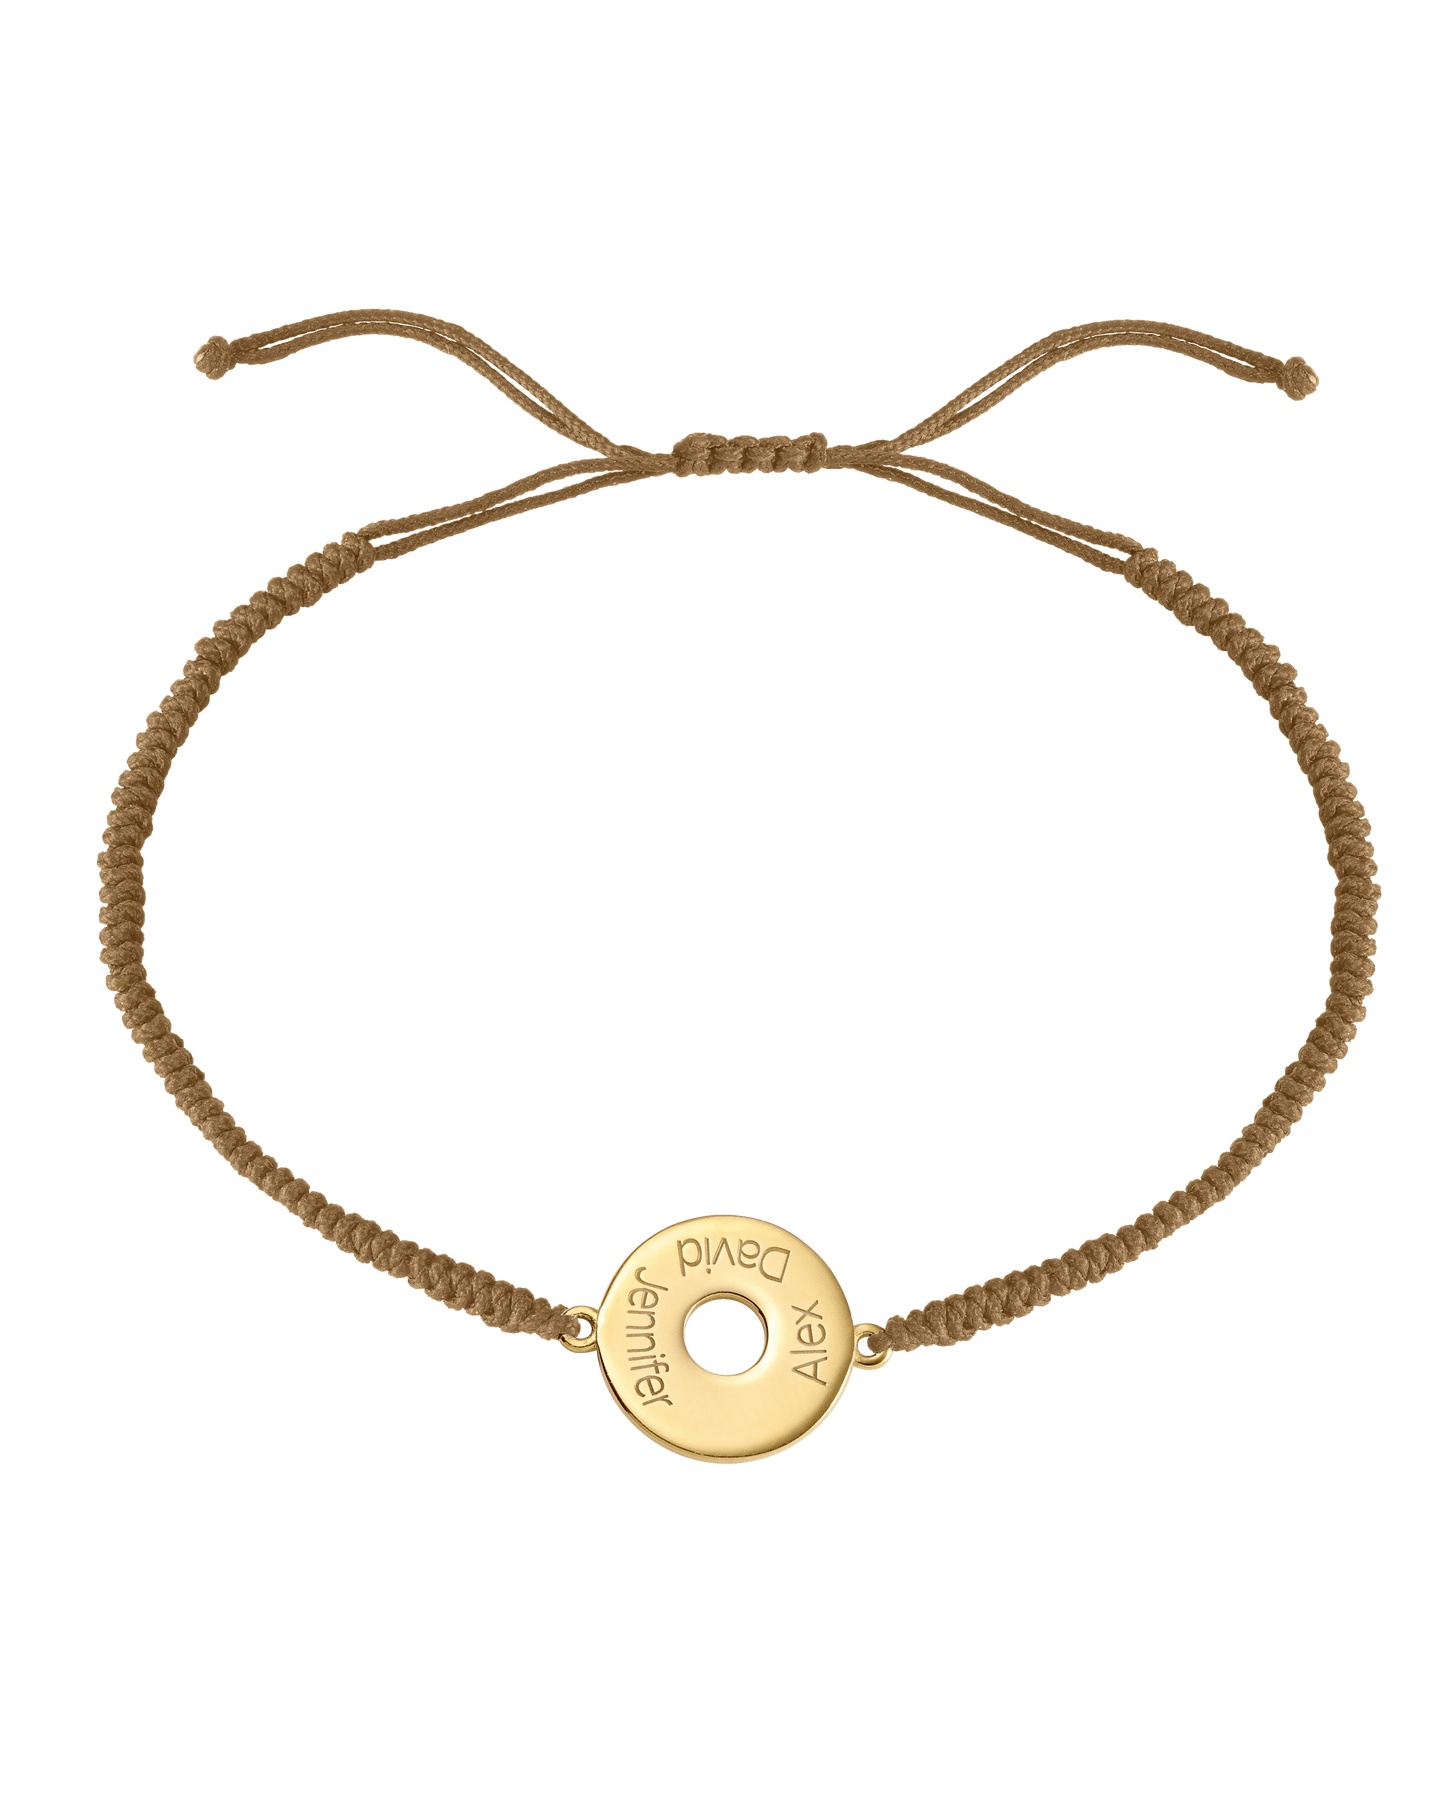 Donut Cord Bracelet - 18K Gold Vermeil Bracelets magal-dev Camel 1 Name Adjustable from 4" to 9"